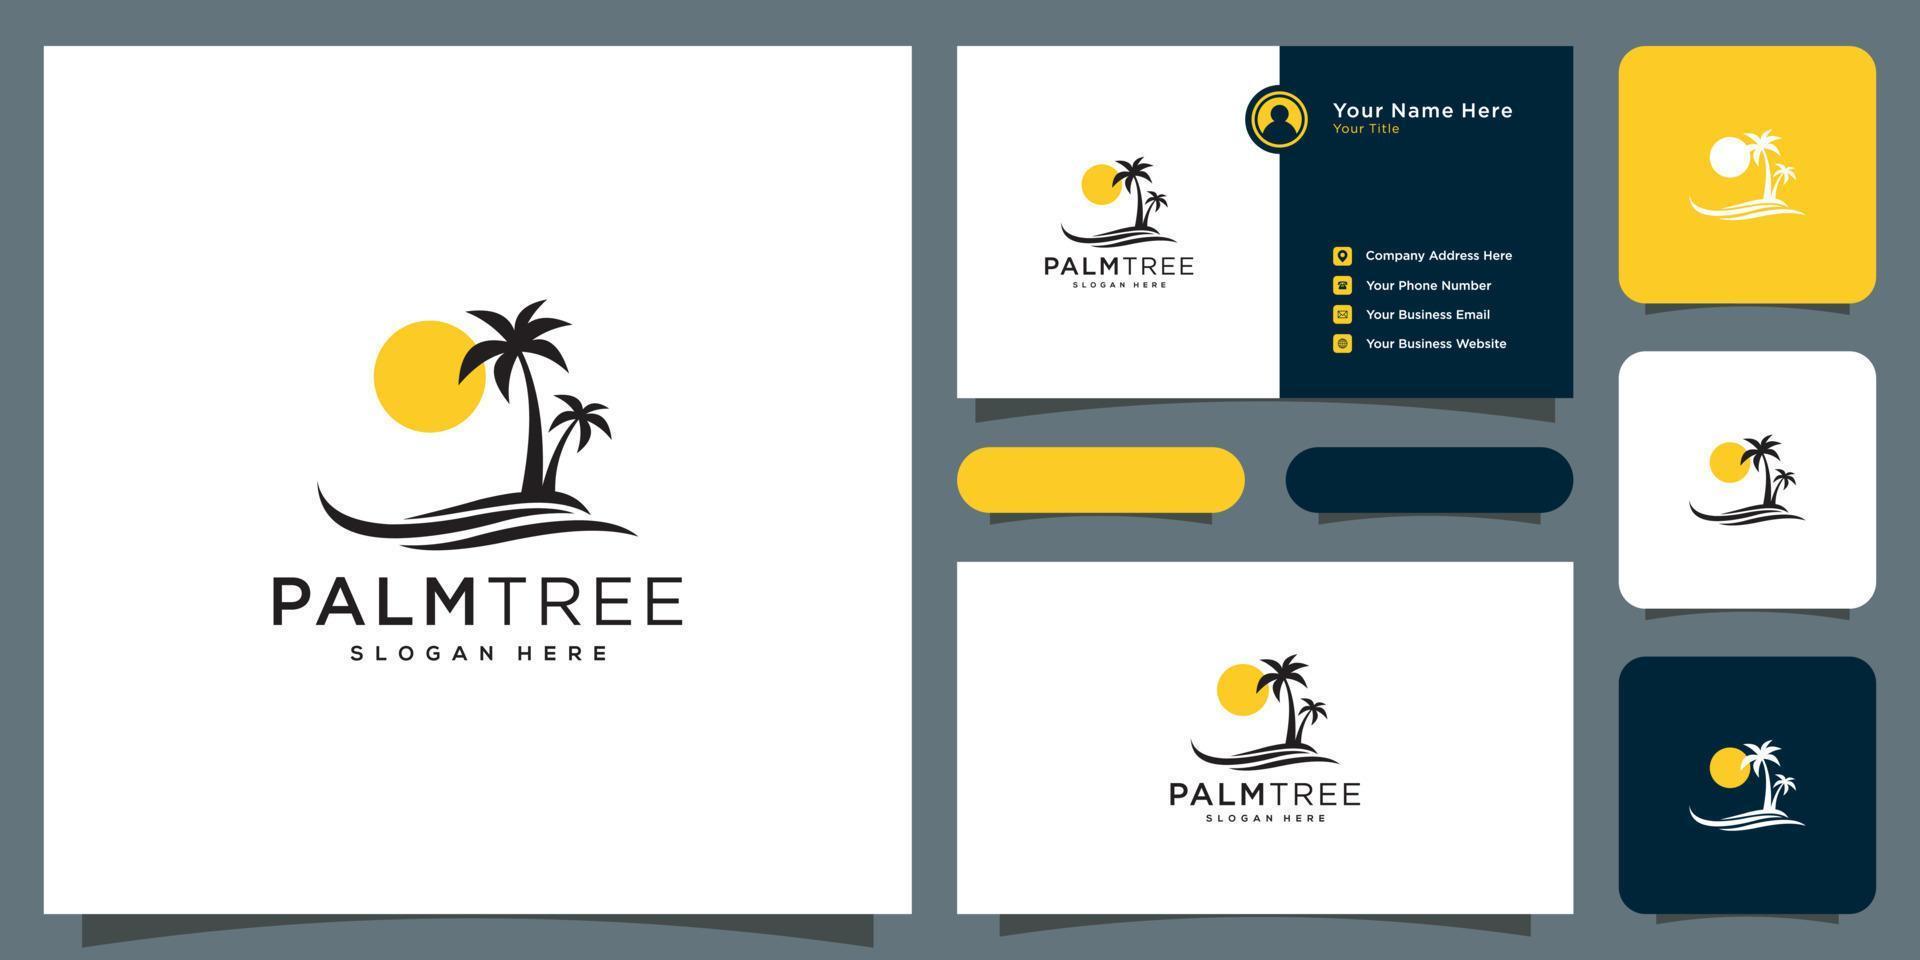 diseño de vector de logotipo de palmera y tarjeta de visita